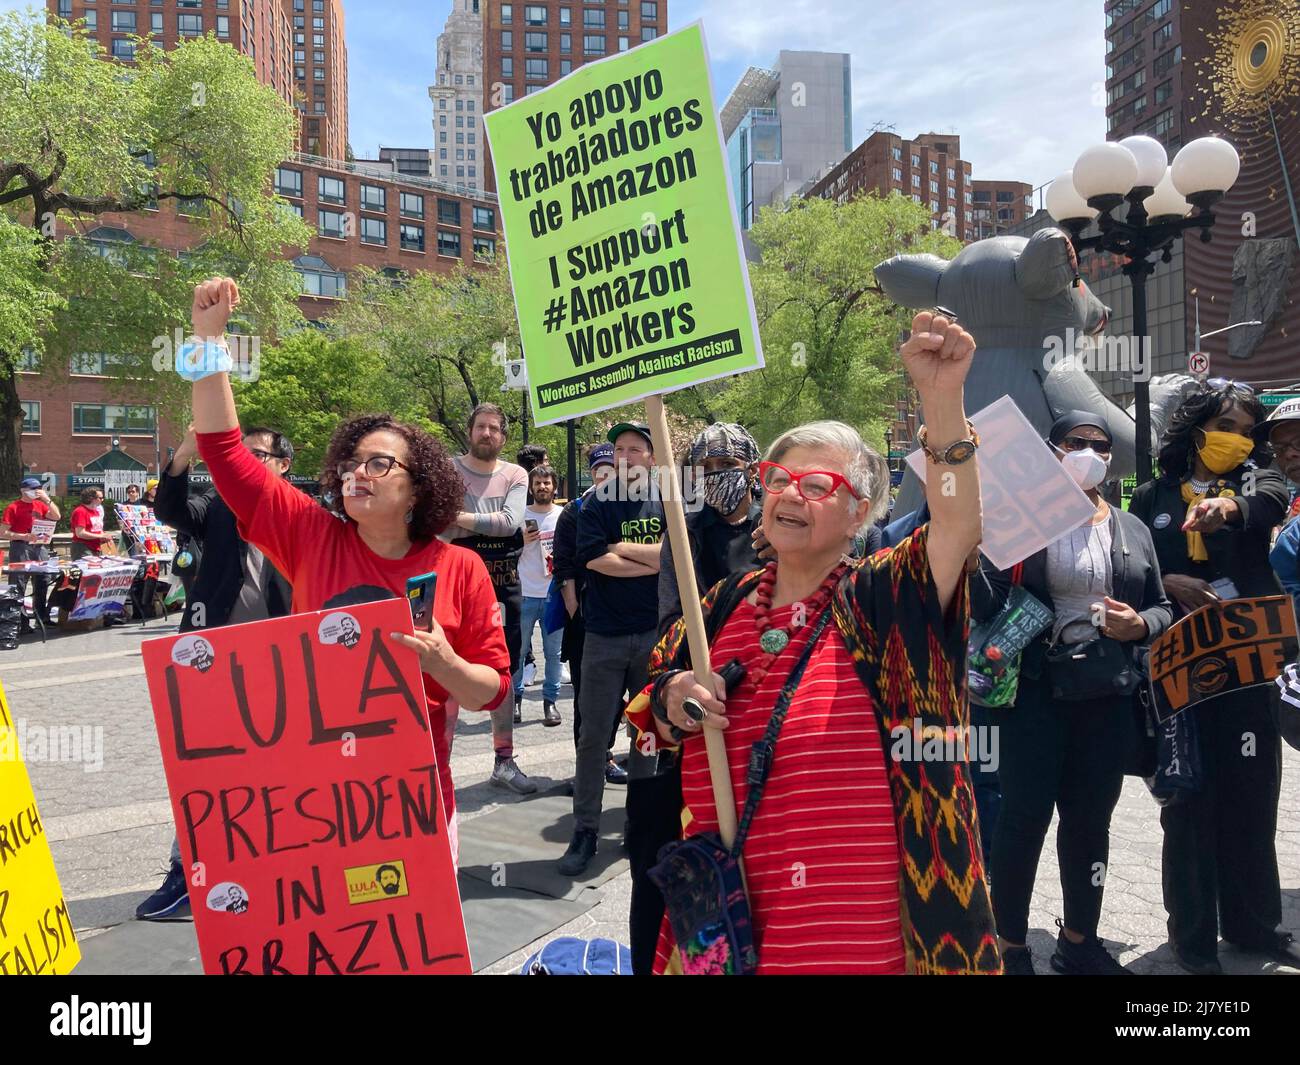 Activistas se congregan en Union Square Park en Nueva York el día de mayo, domingo, 1 de mayo de 2022. Miembros de numerosos grupos se unieron para apoyar la sindicalización y los ataques corporativos contra los trabajadores. (© Frances M. Roberts) Foto de stock